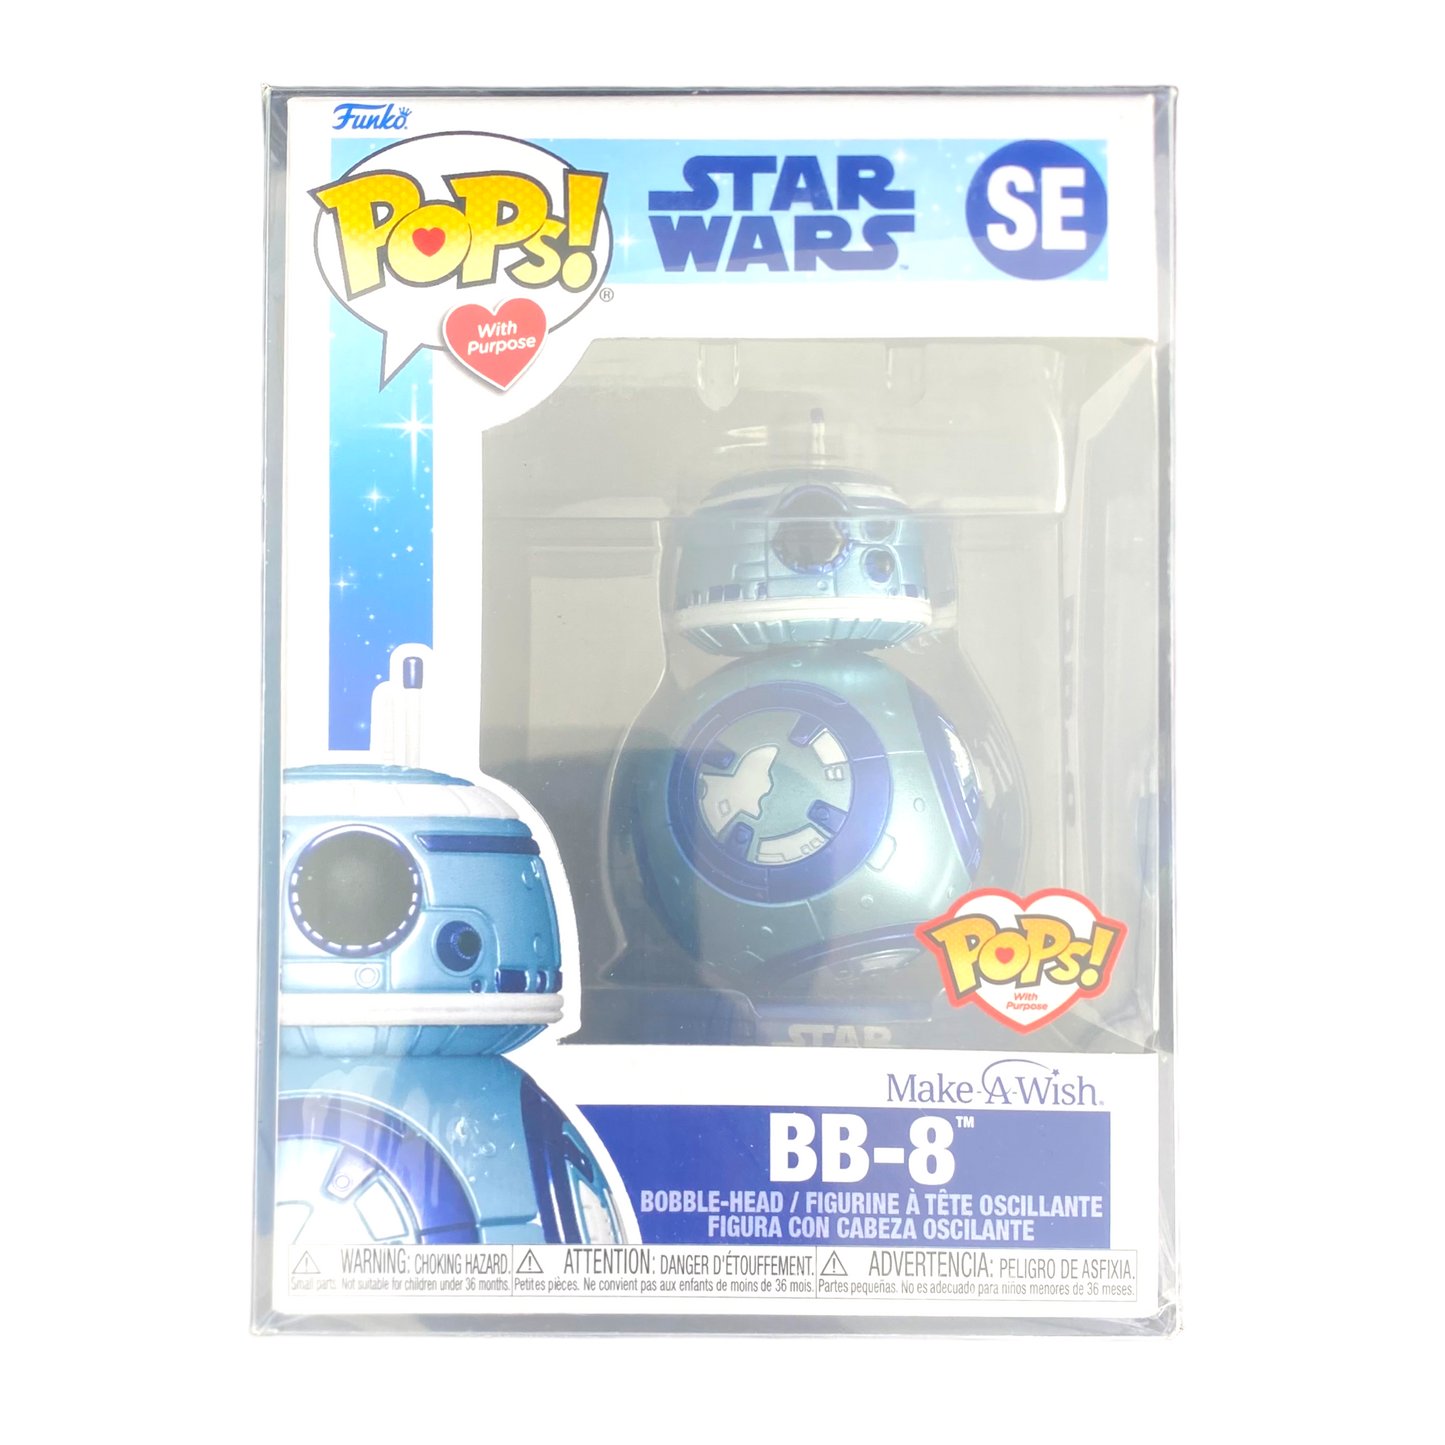 Funko Pop x Star Wars - BB-8 SE Make a Wish Pop